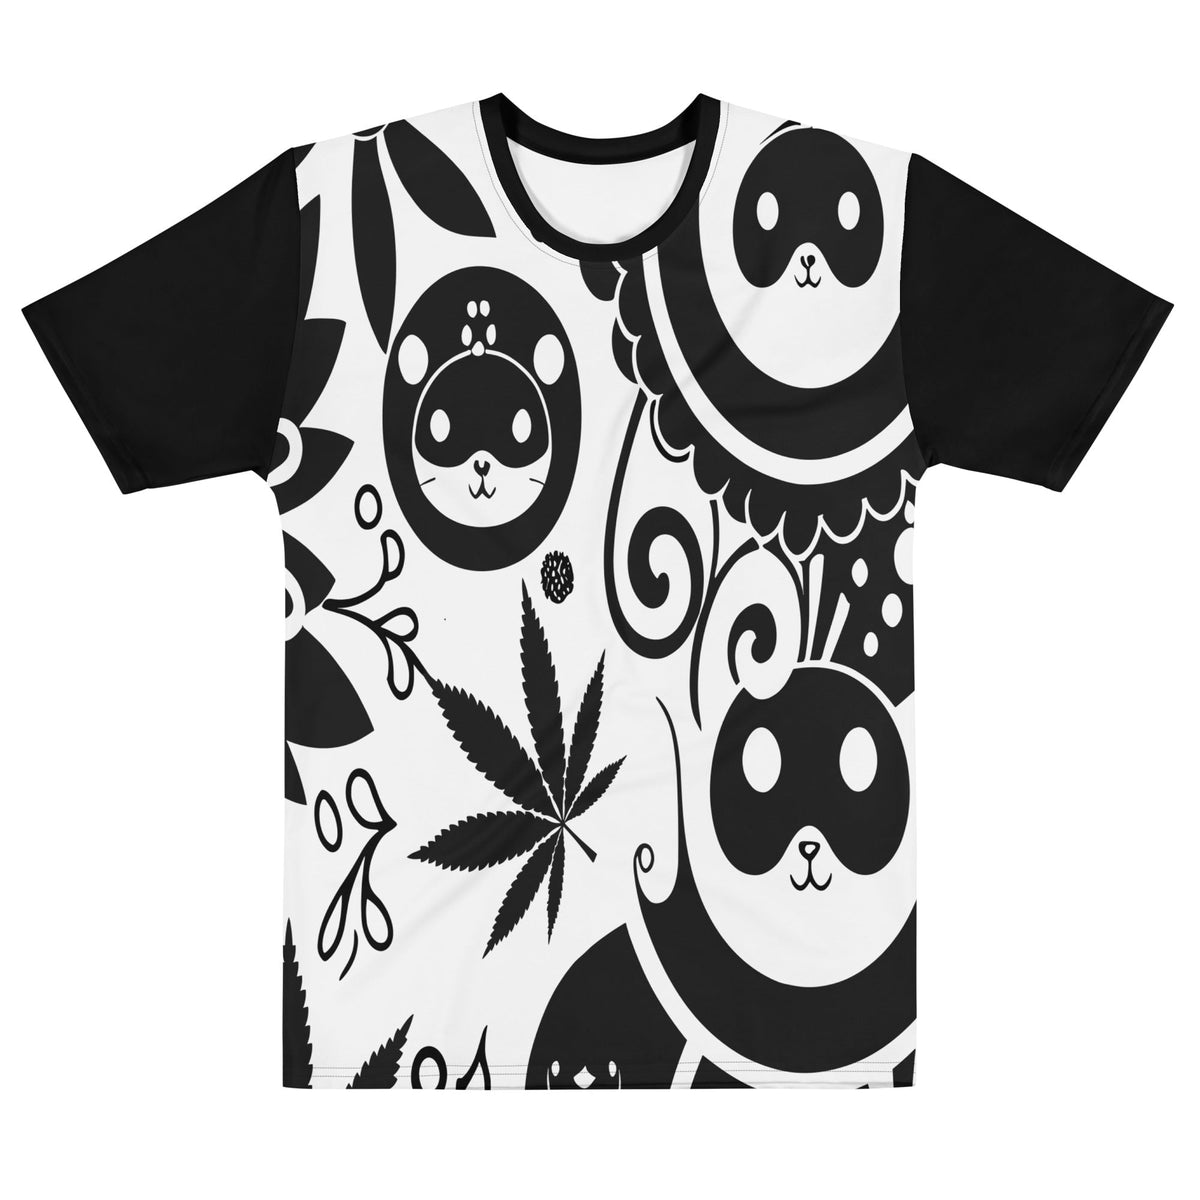 Kawaii PNG Designs for T Shirt & Merch